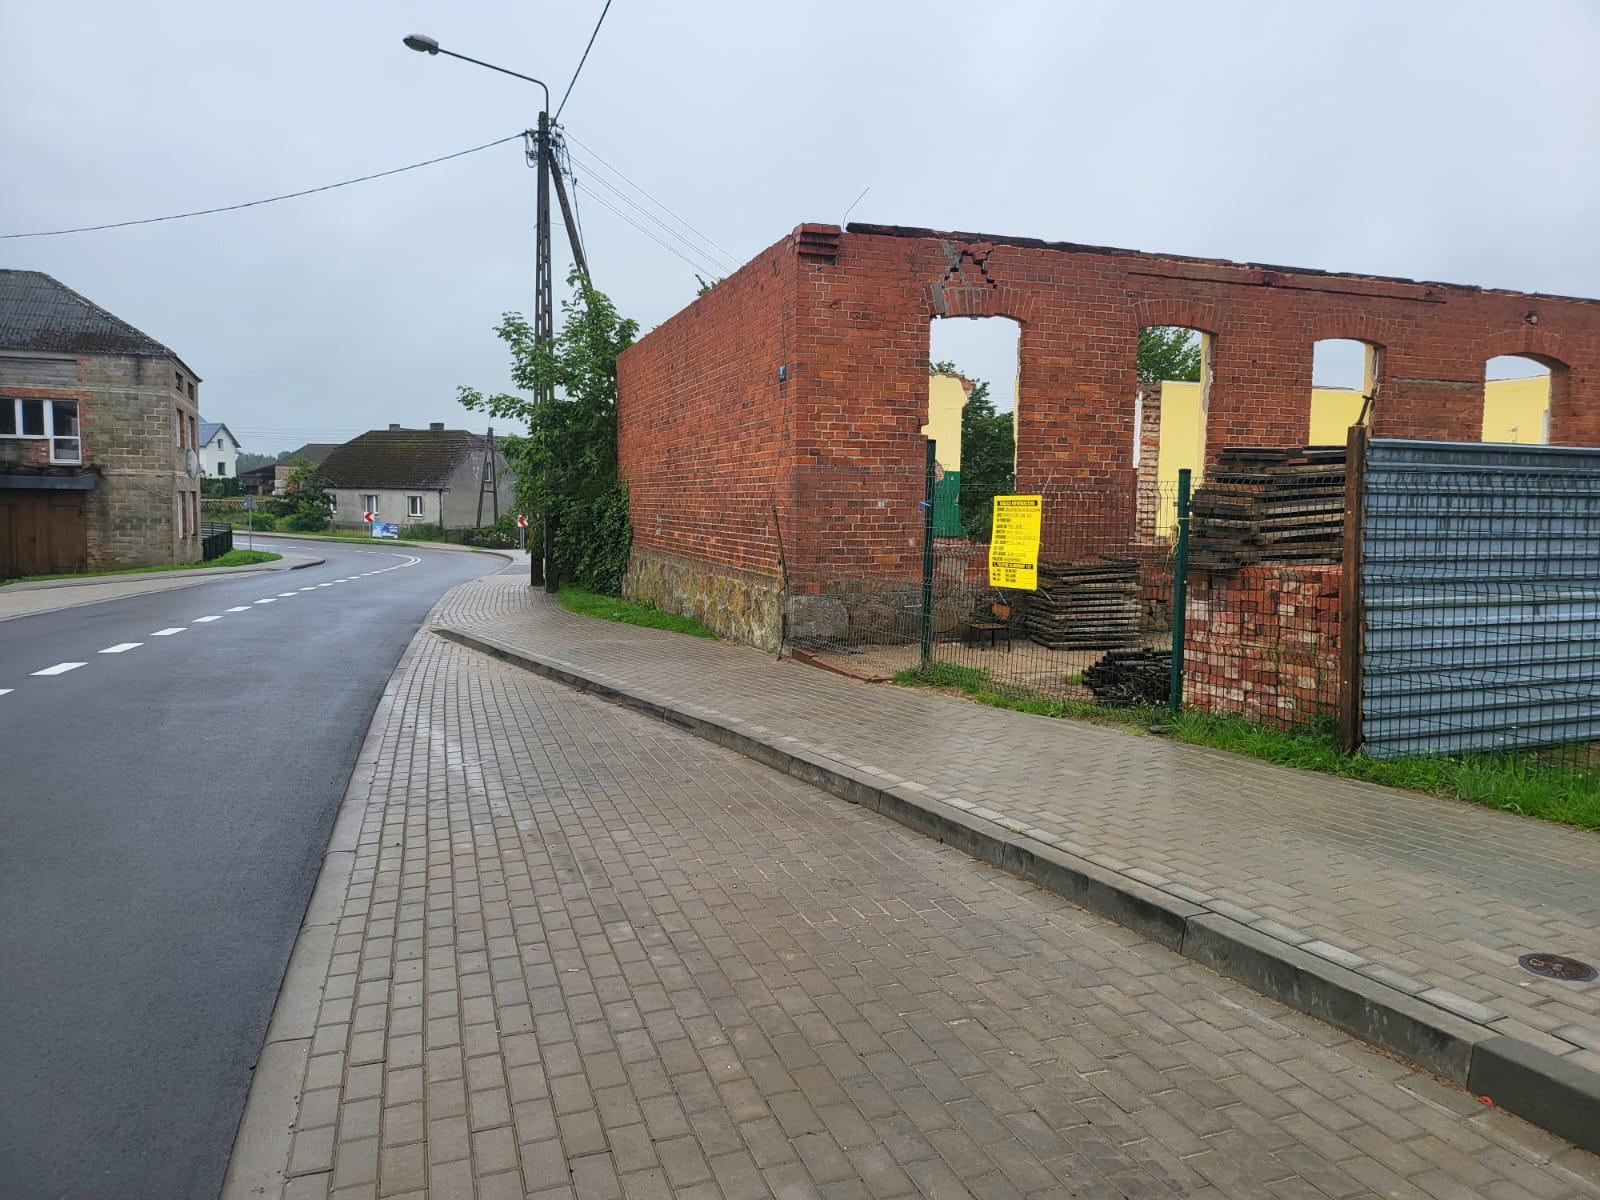 Rozpoczęła się przebudowa i rozbudowa budynku szkoły na świetlicę wiejską w m. Borzyszkowy. Gmina Lipnica może zrealizować tę inwestycję dzięki Rządowemu Programowi Inwestycji Strategicznych.